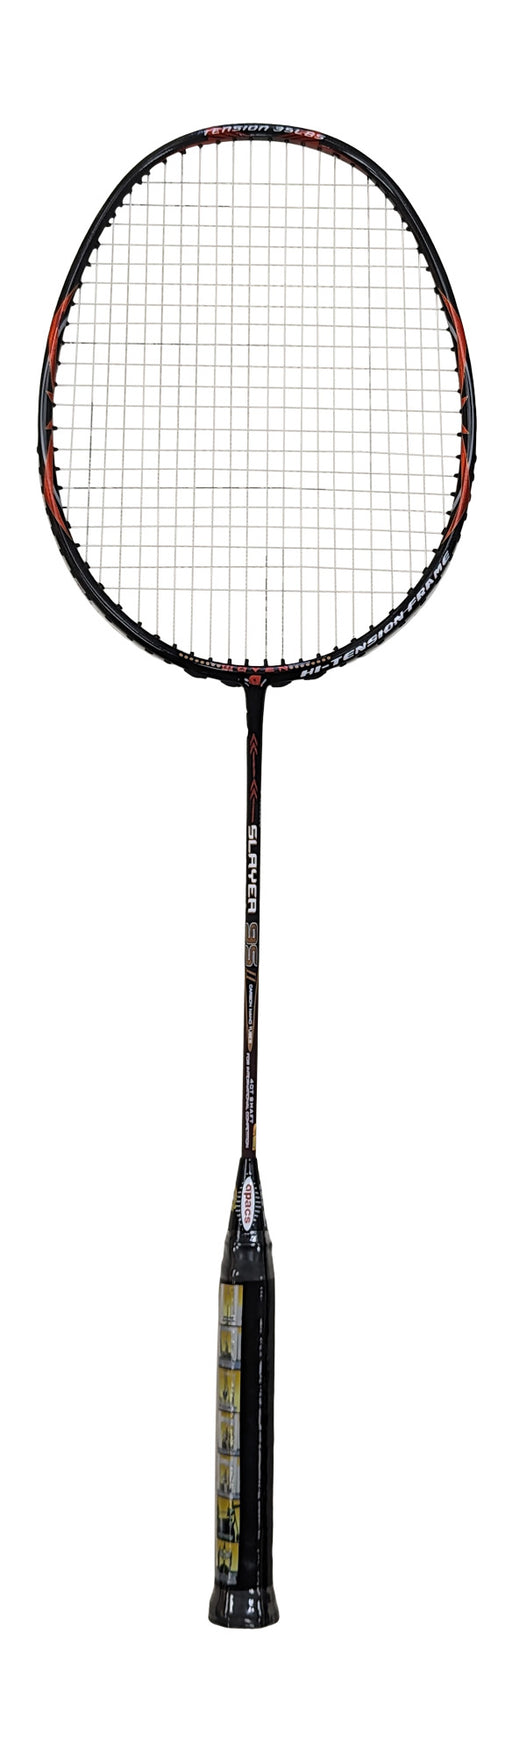 Apacs Imperial Pro Badminton Racquet for sale